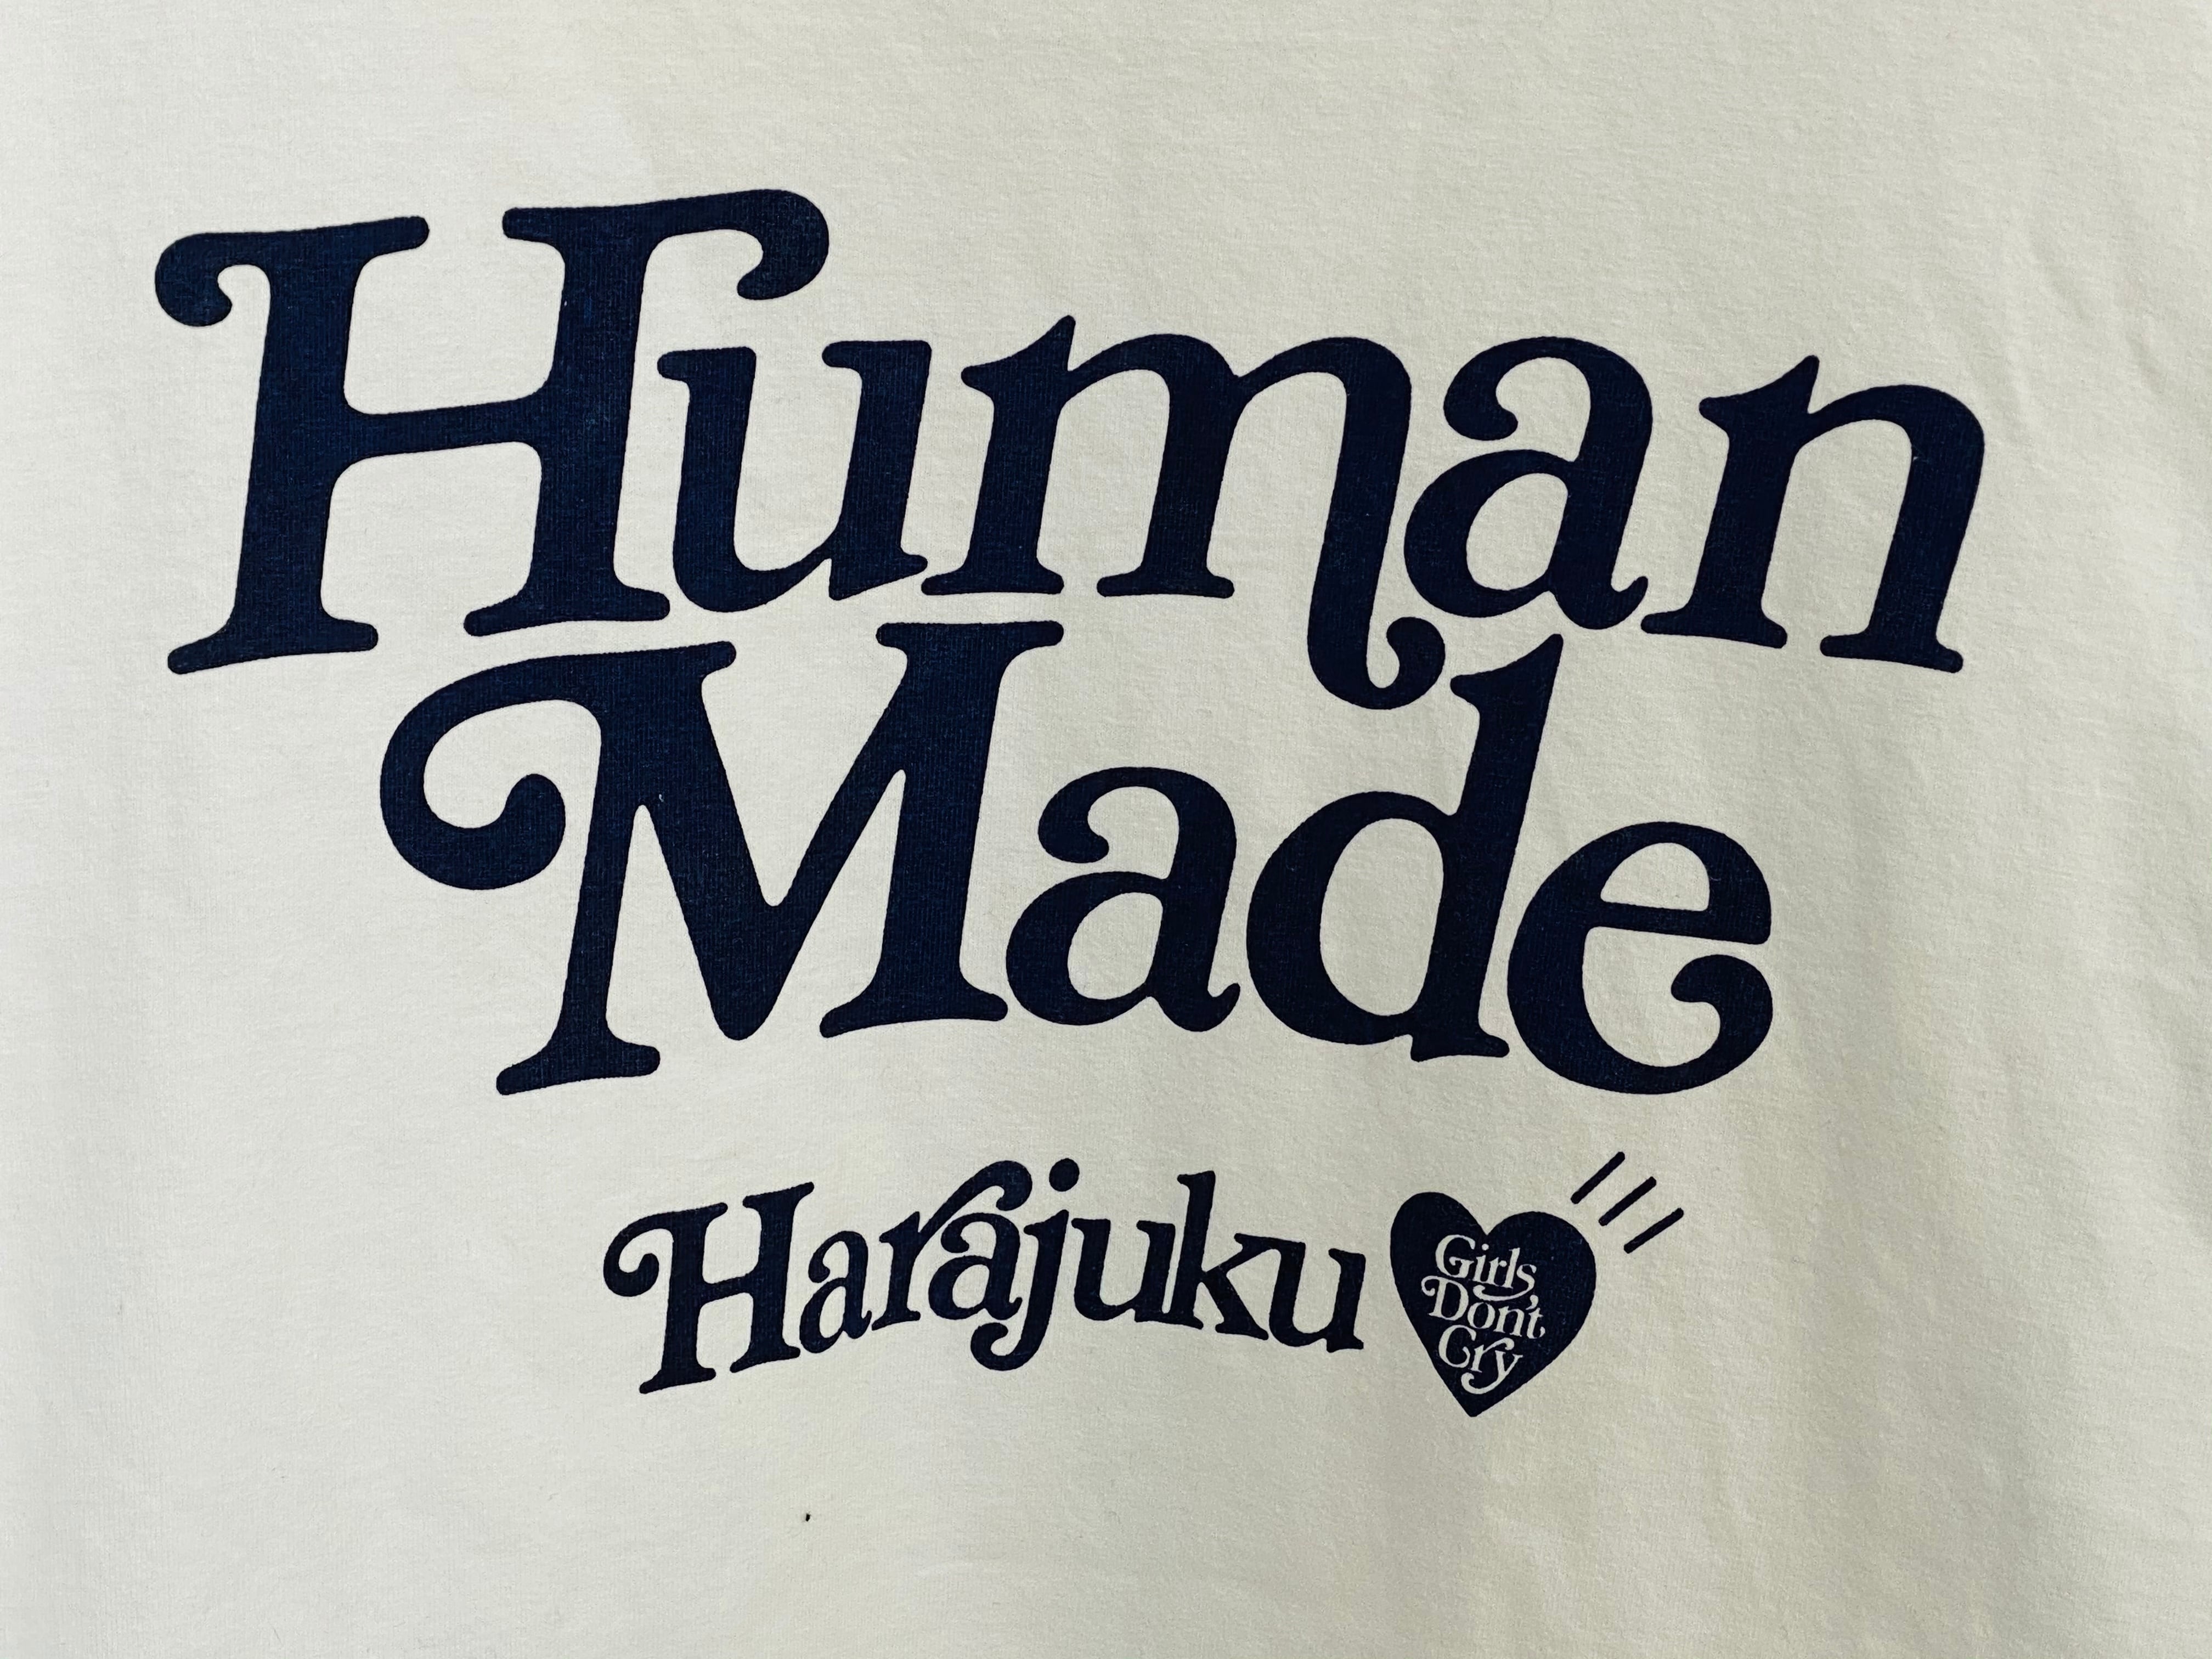 human made harajuku tee XL Tシャツ